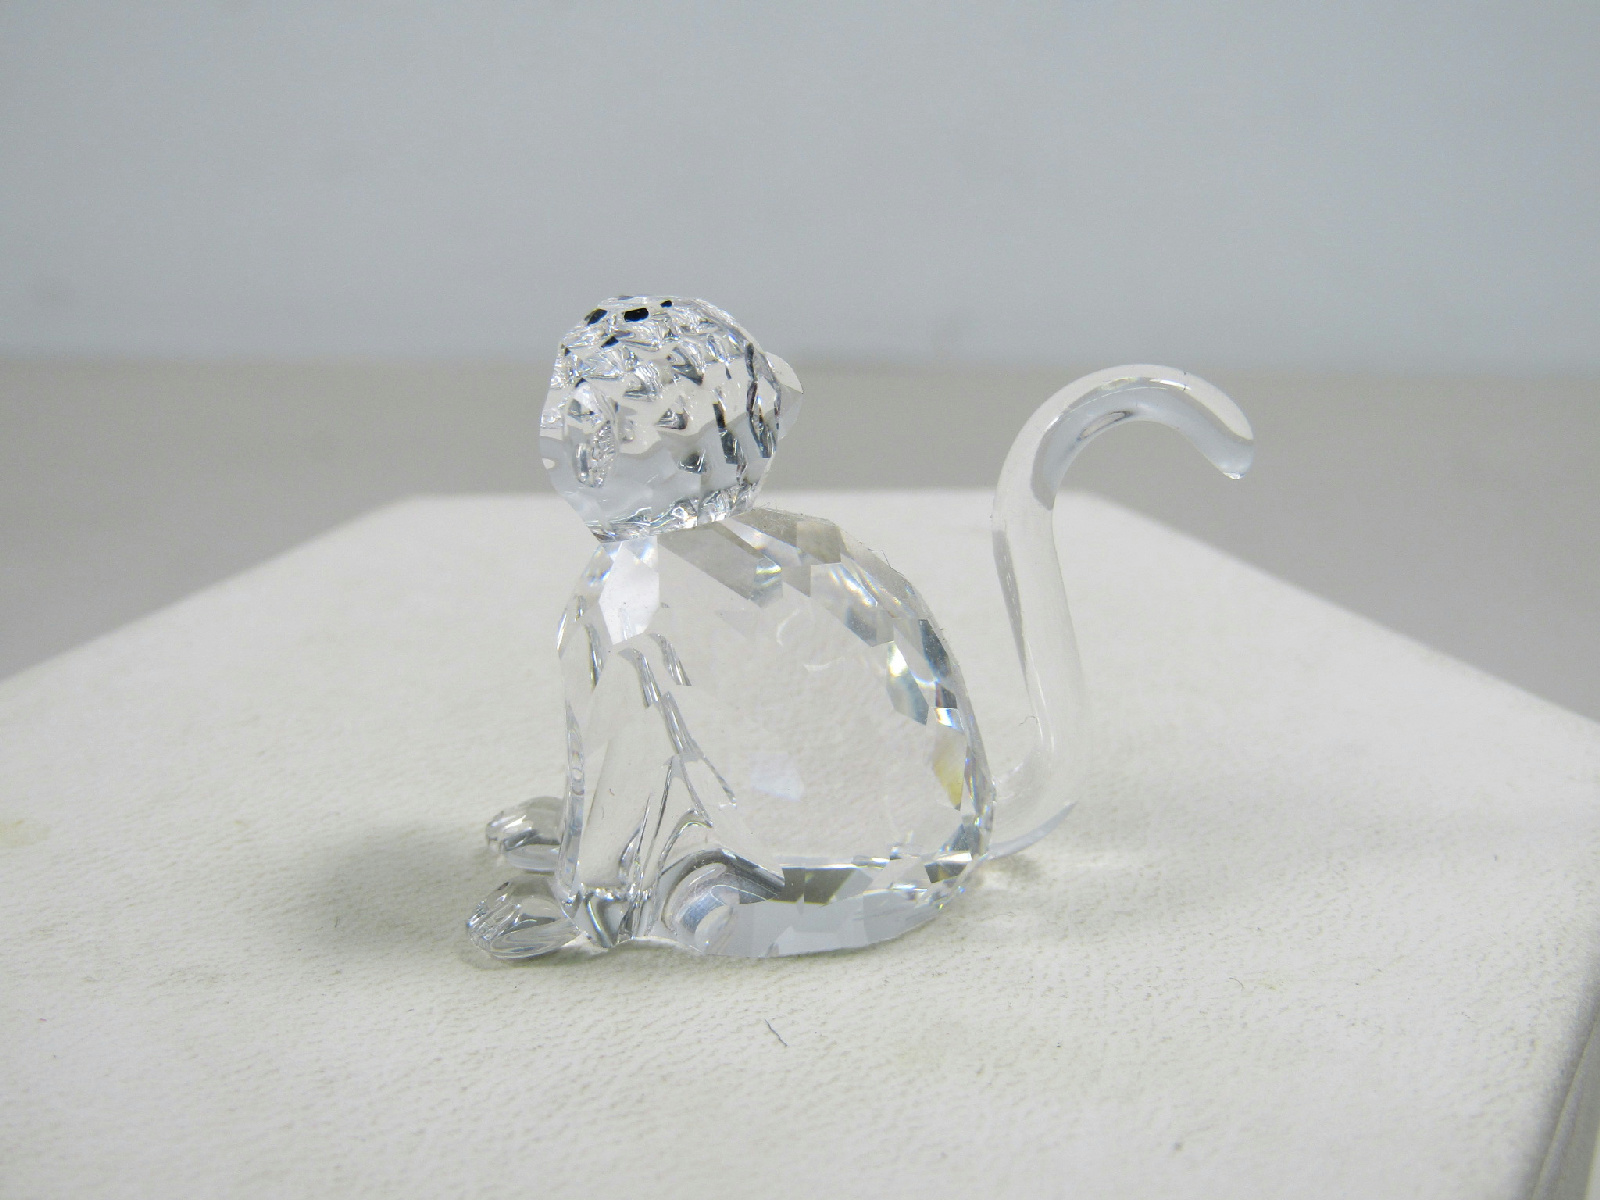 ::Swarovski Crystal Trinket Monkey Small Decoration Figurine in Box